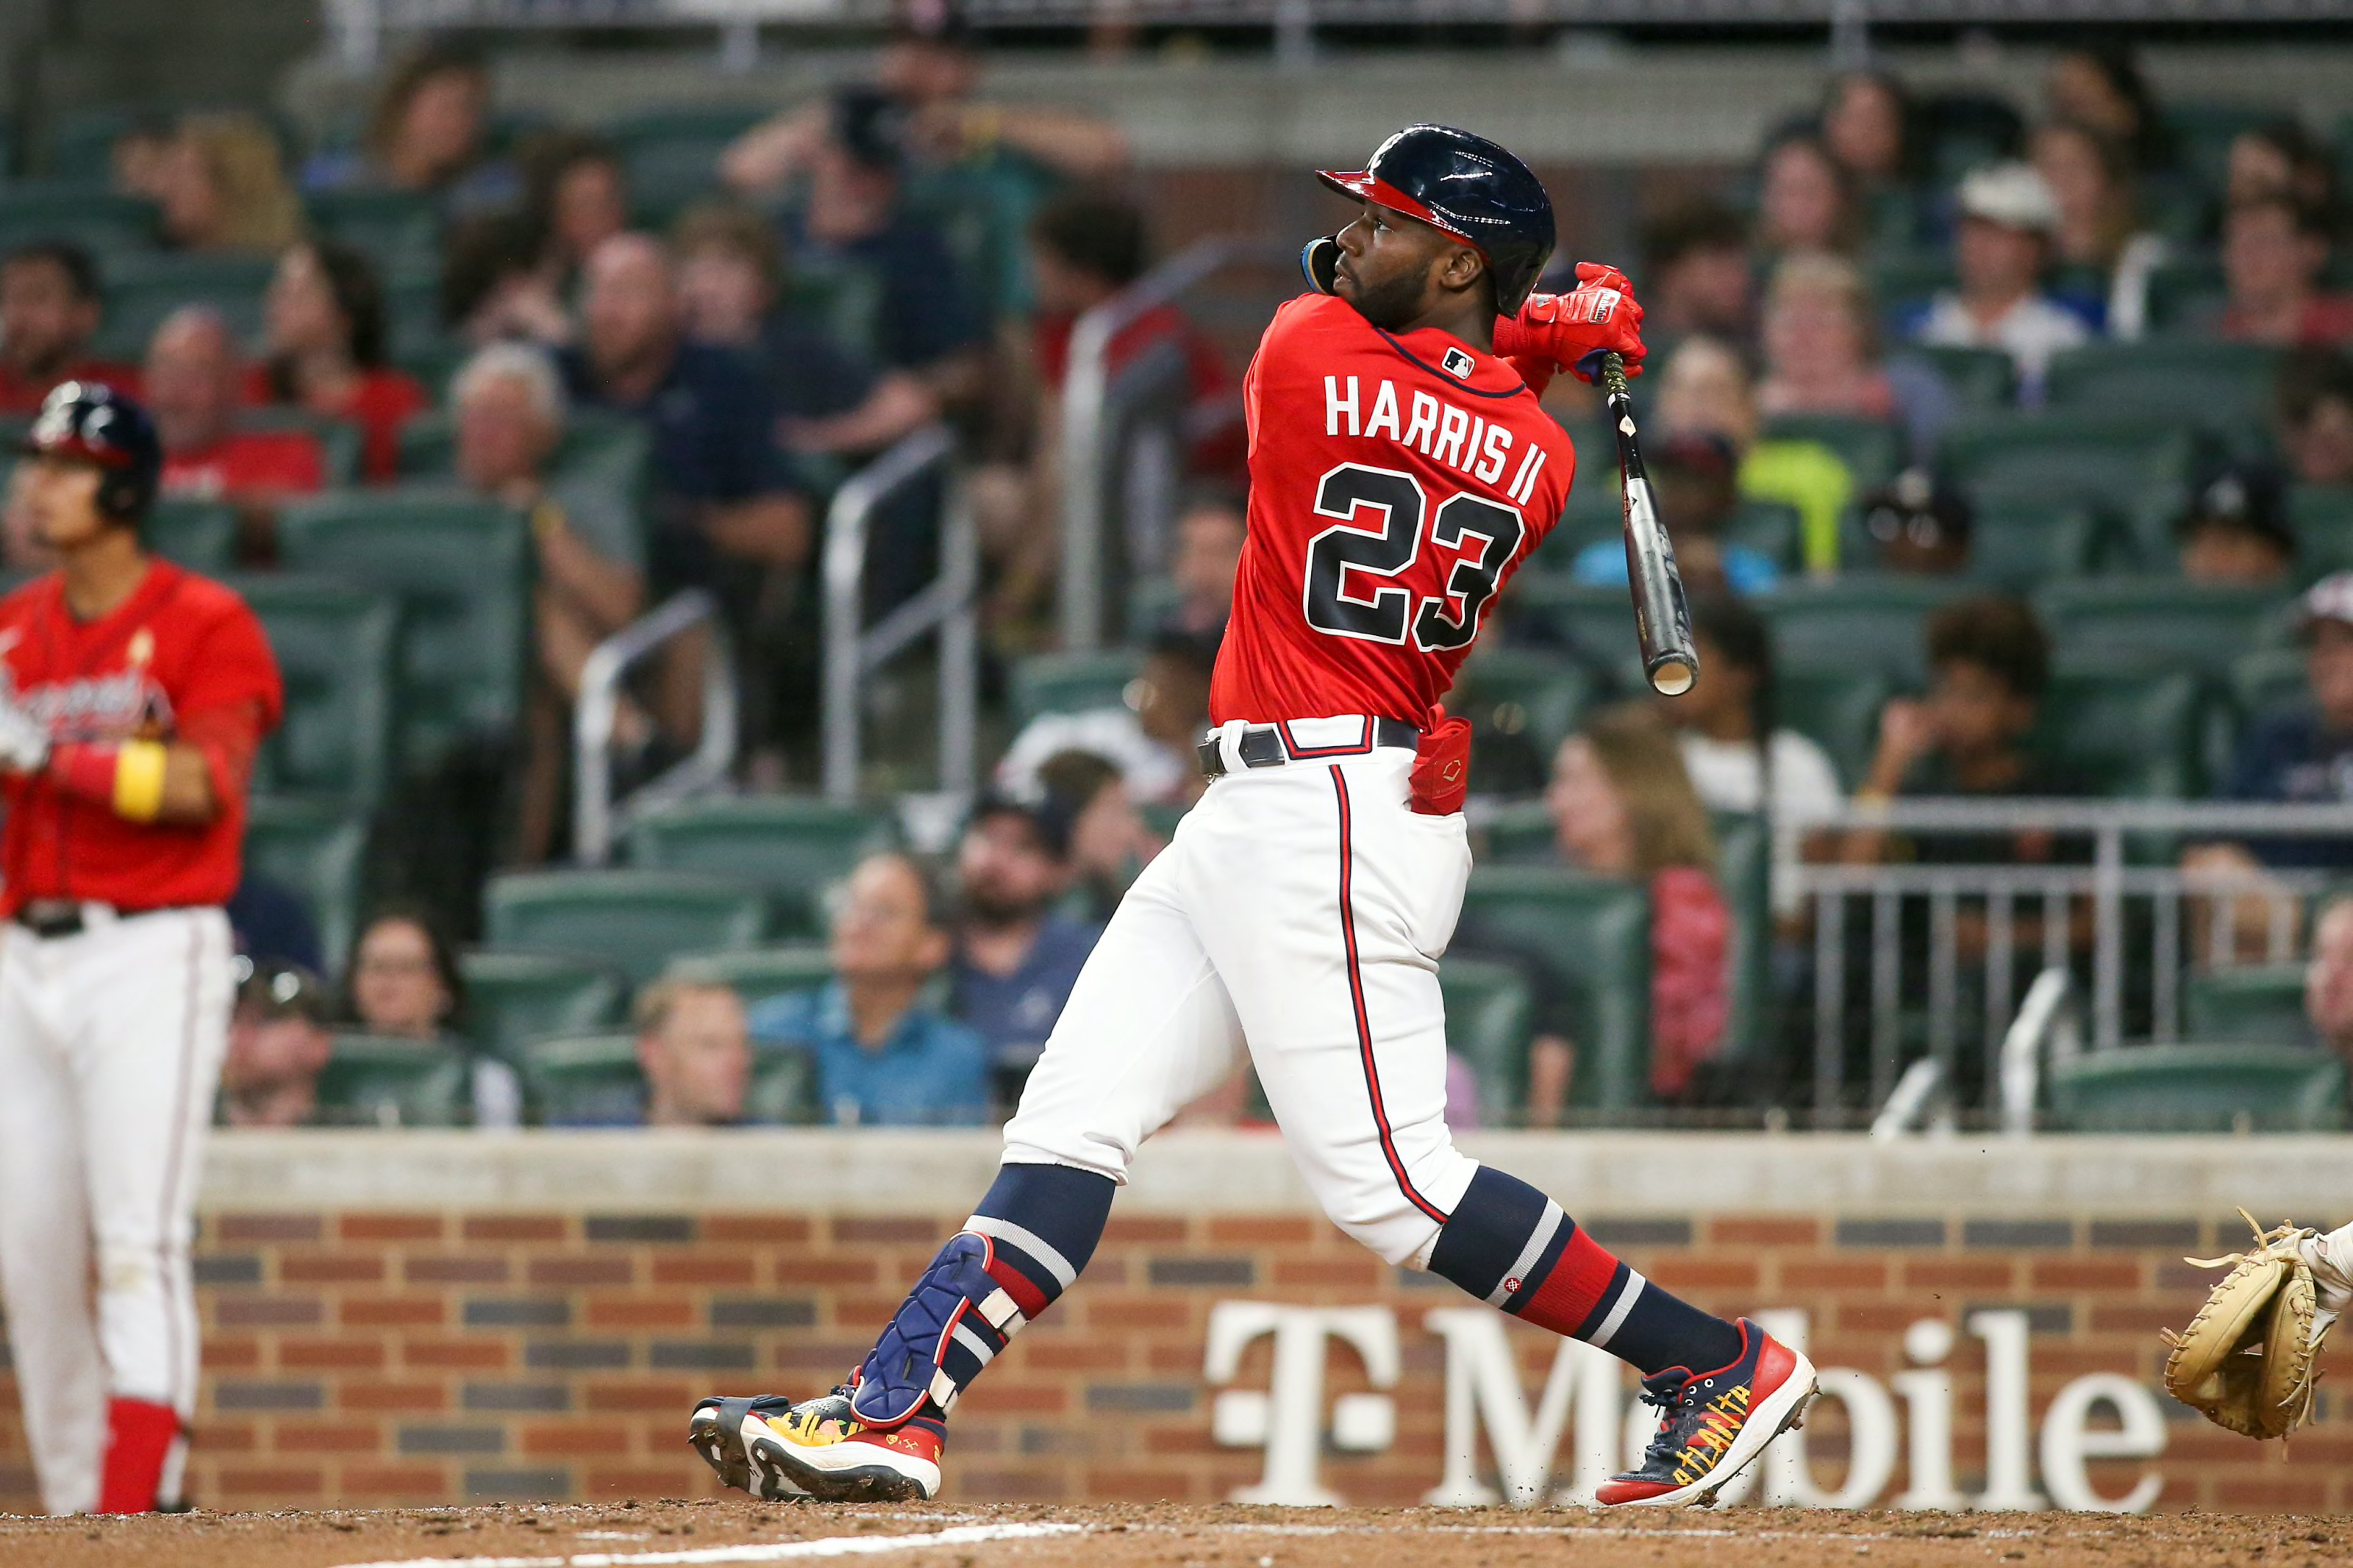 Braves' Harris II says Rookie of Year season was 'decent